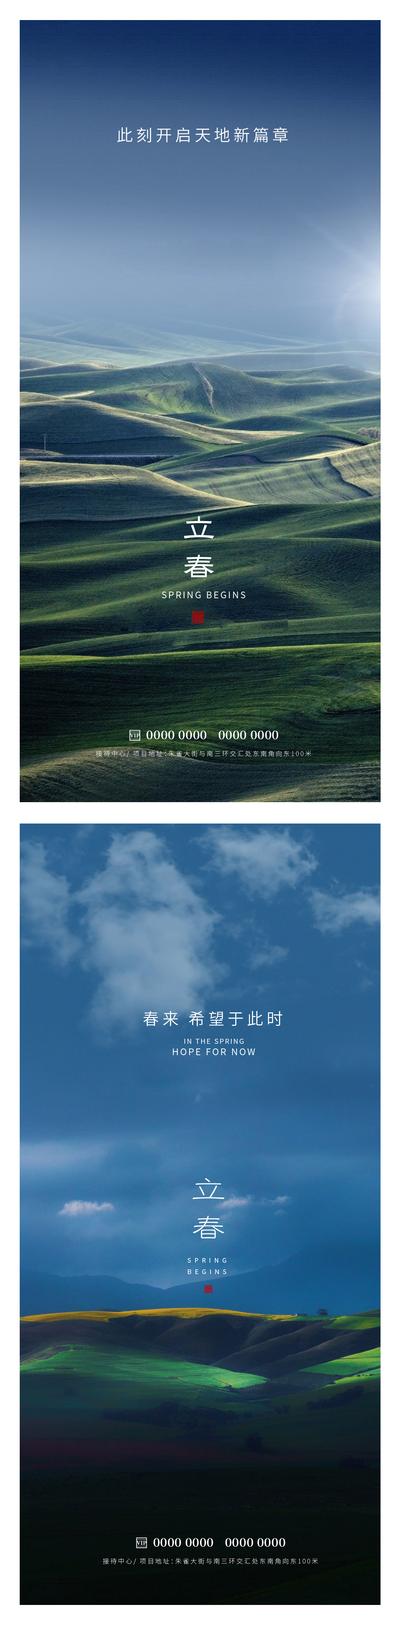 南门网 广告 海报 节日 立春 春天 美景 自然 风光 蓝天 草地